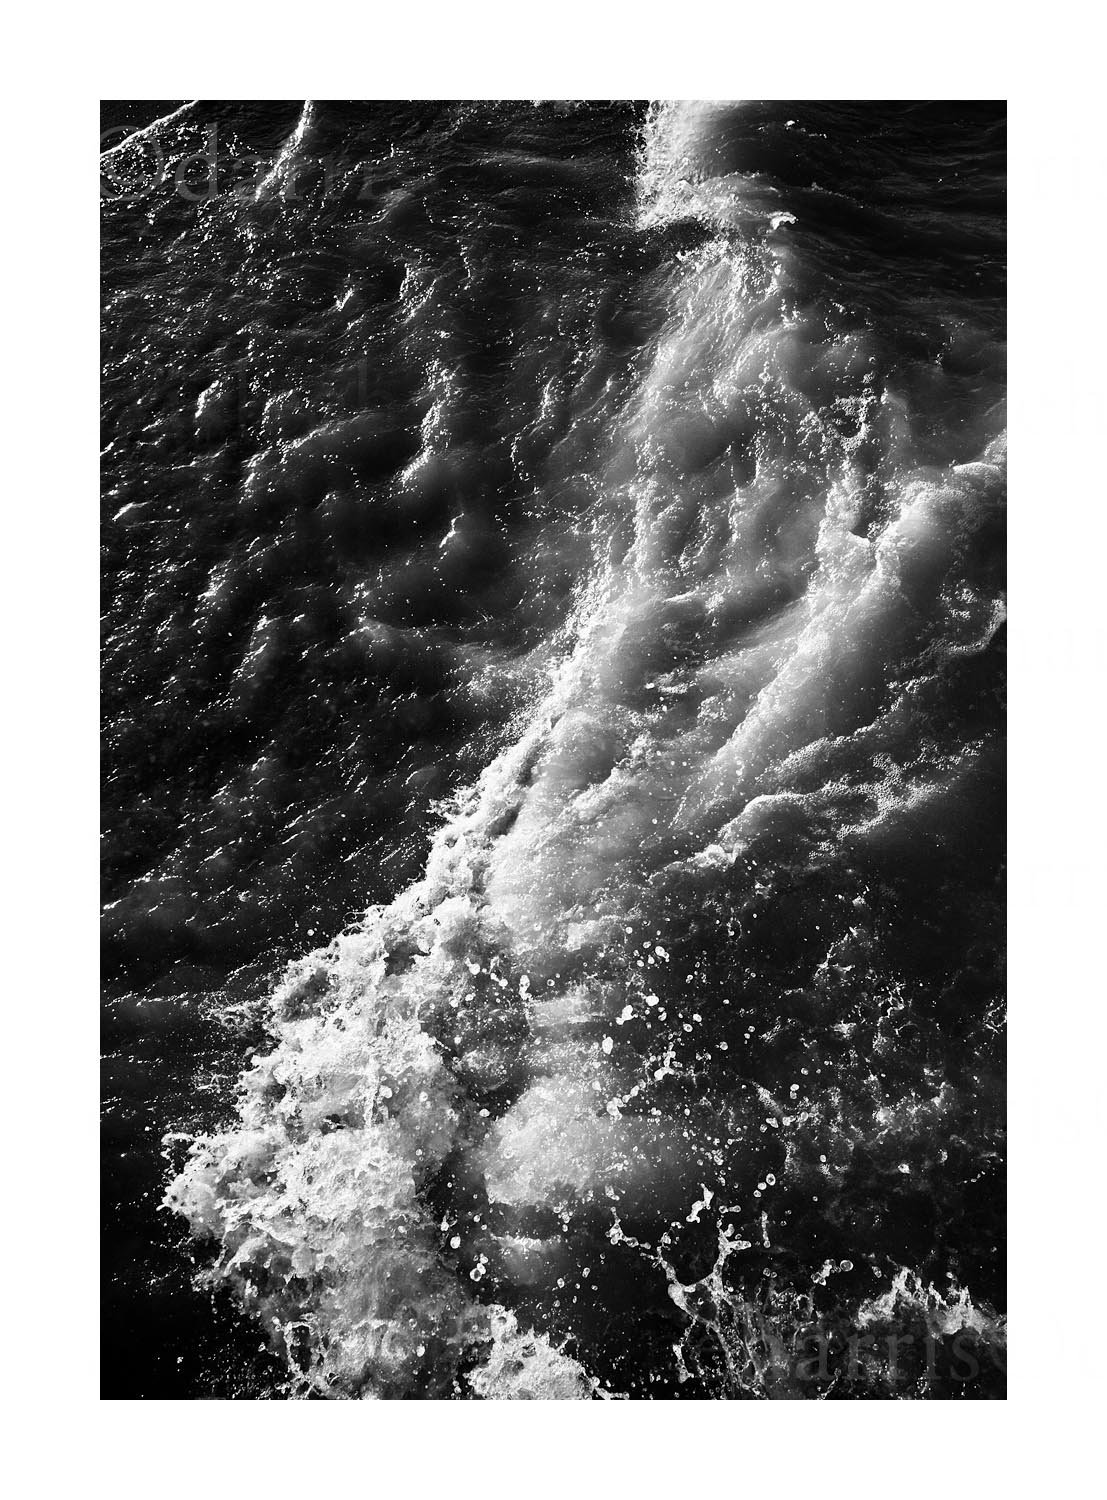 Lake Michigan waves #08